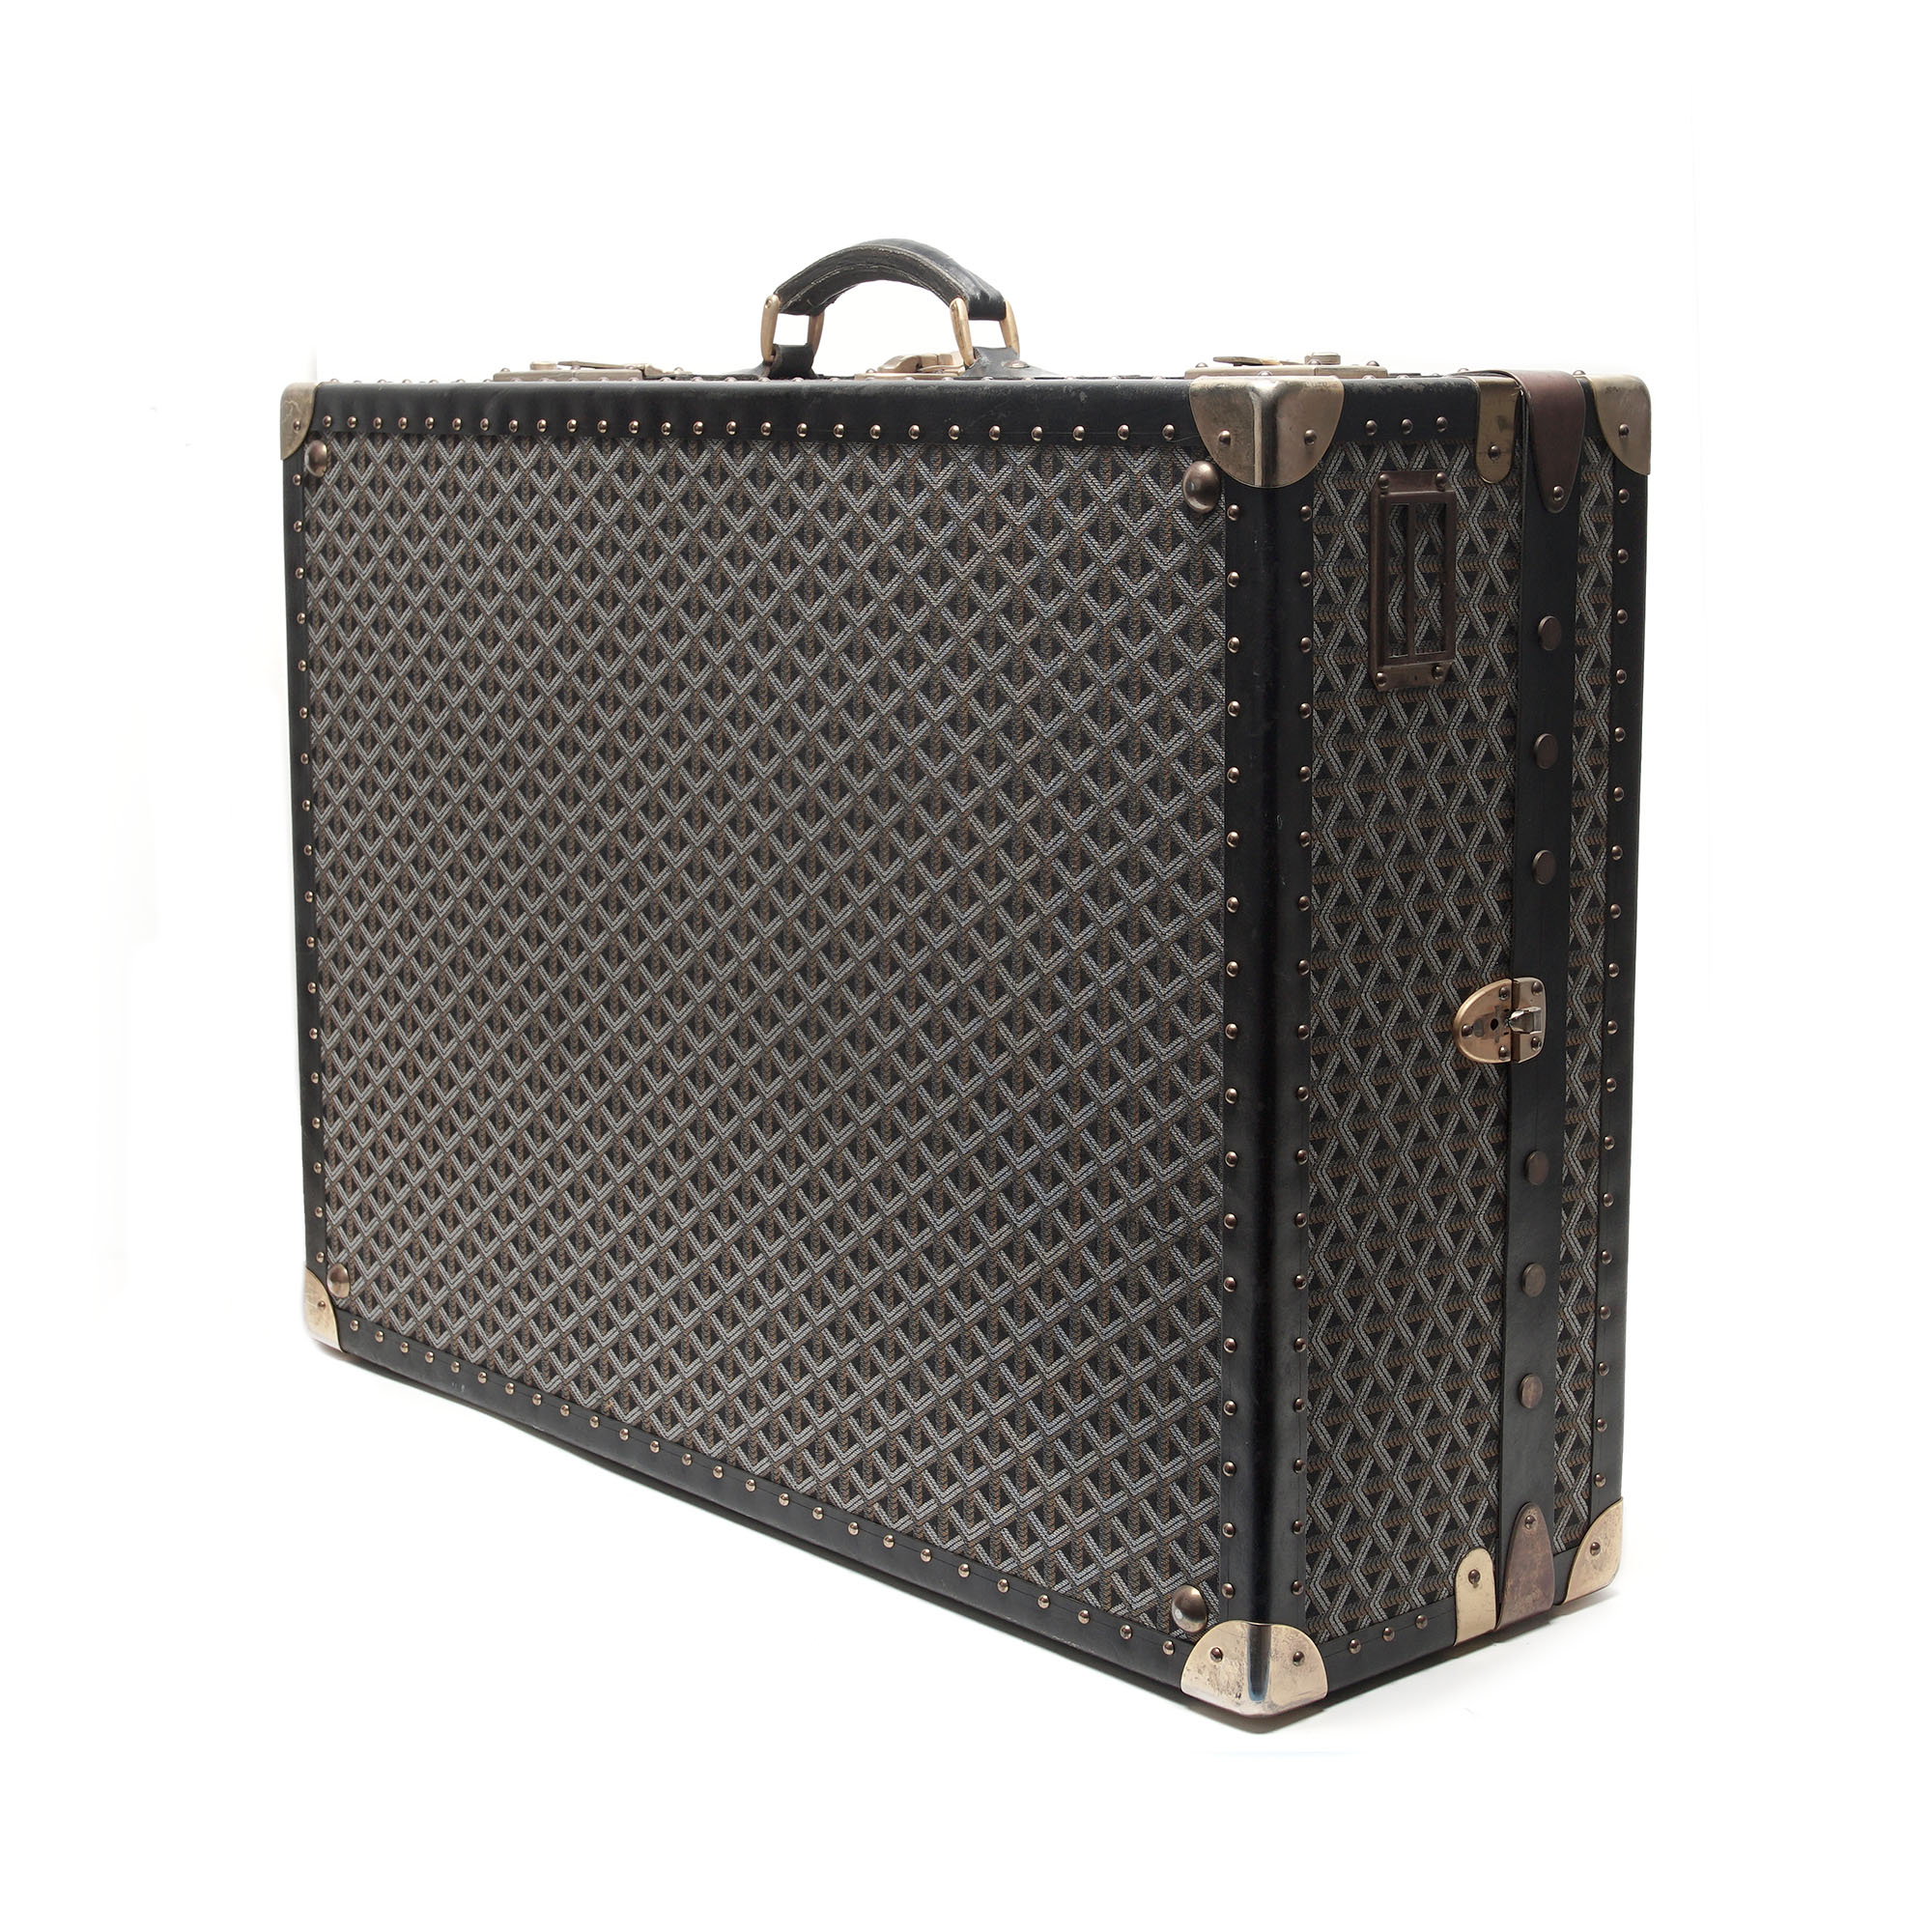 Vintage Goyard suitcase - Pinth Vintage Luggage